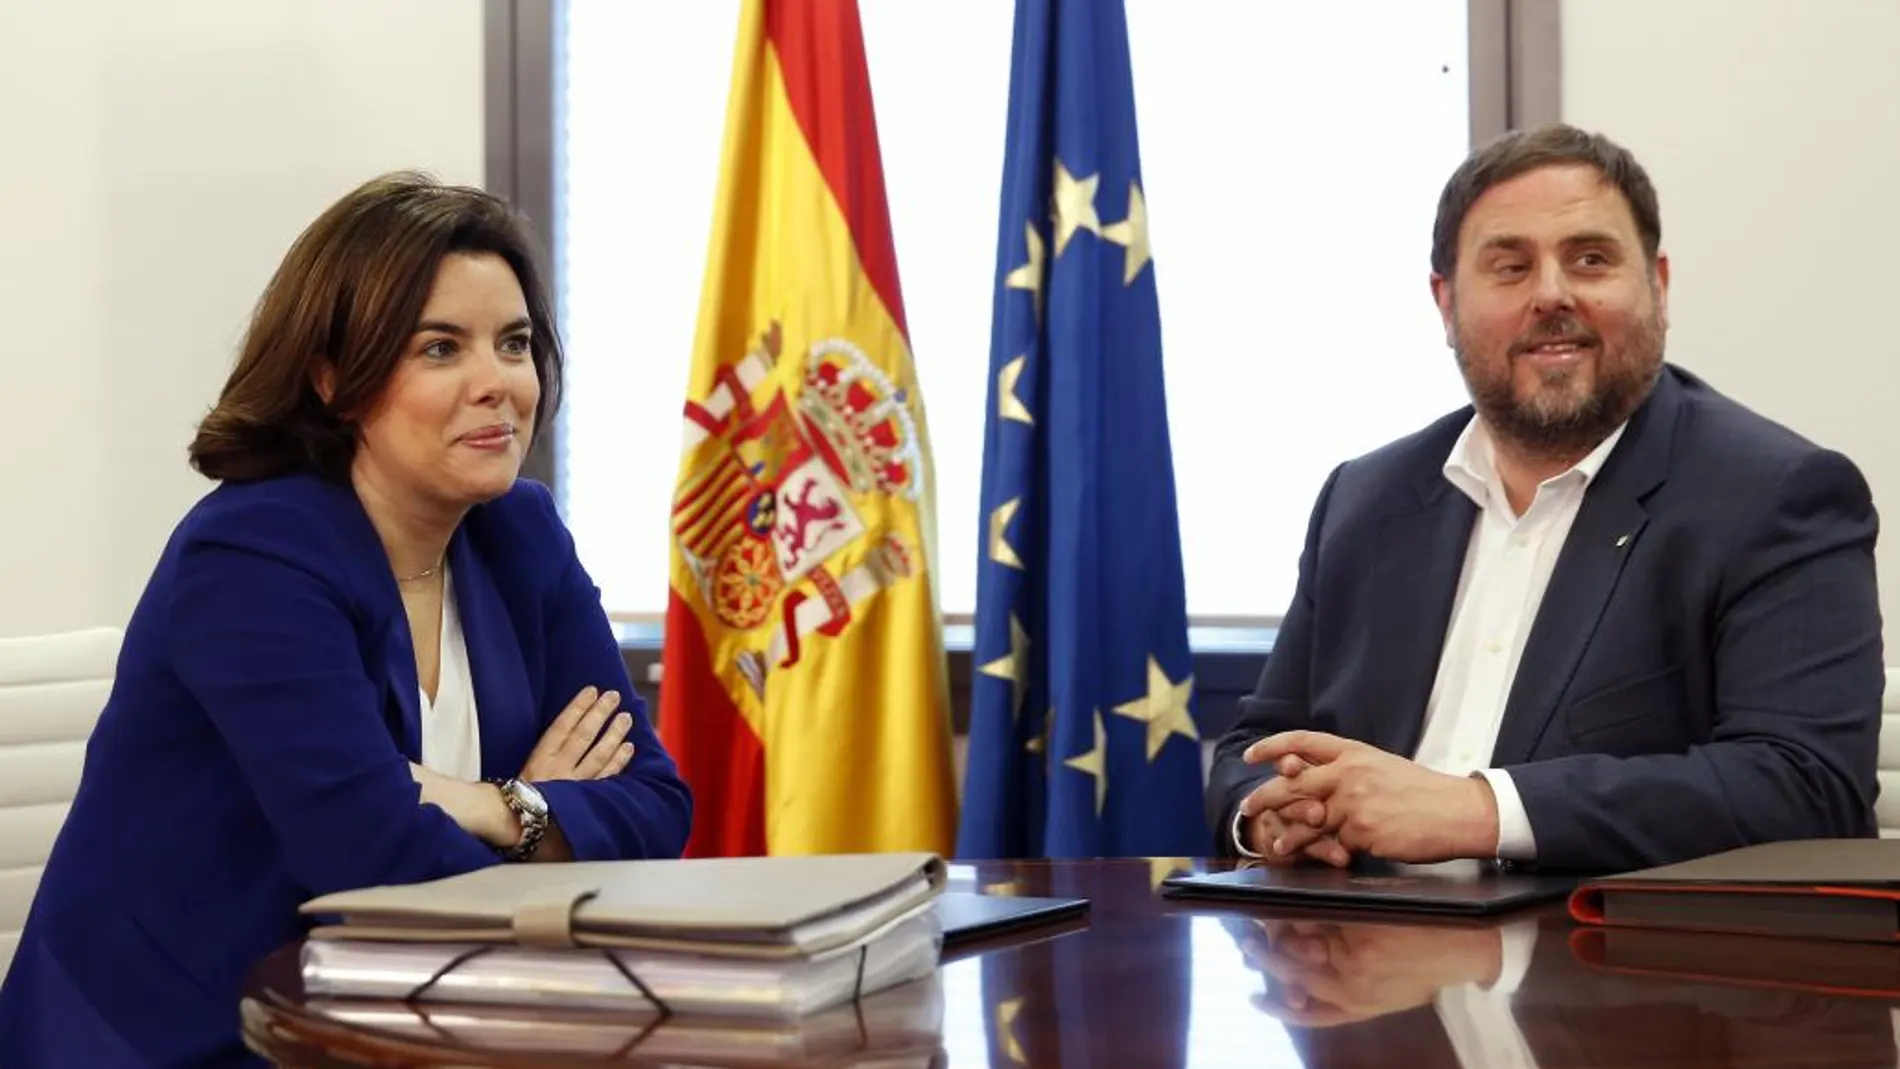 La vicepresidenta del Gobierno, Soraya Sáenz de Santamaría, se ha reunido hoy con el vicepresidente catalán y líder de ERC, Oriol Junqueras